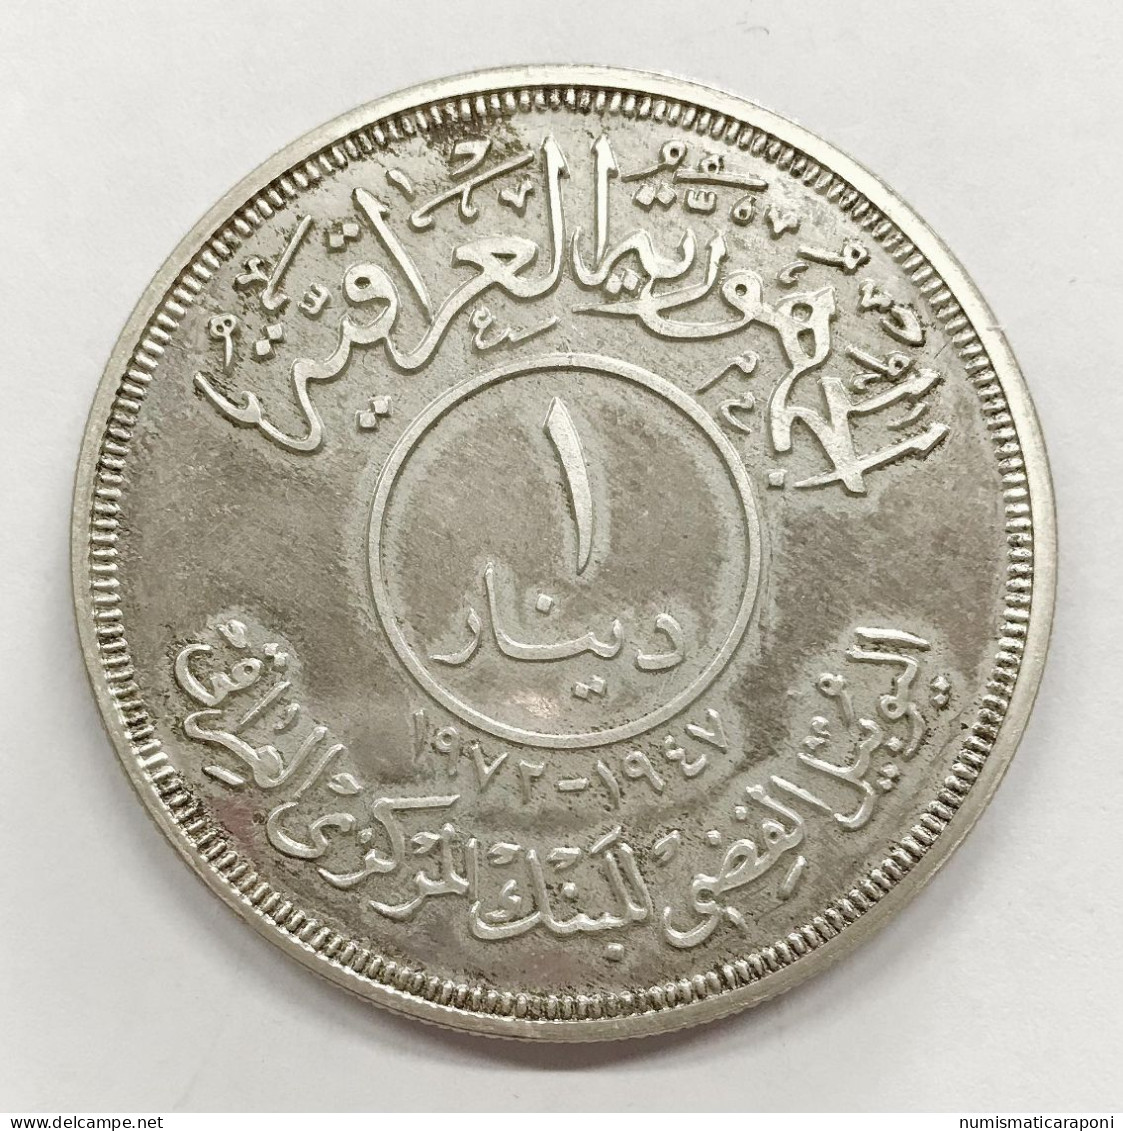 Iraq Irak Lotto Di 2 Monete Dinar 1972 Ag (AH-1932) Km#137 25 Anniversario Banca Centrale Iraq Fdc + Pf Like E.999 - Iraq